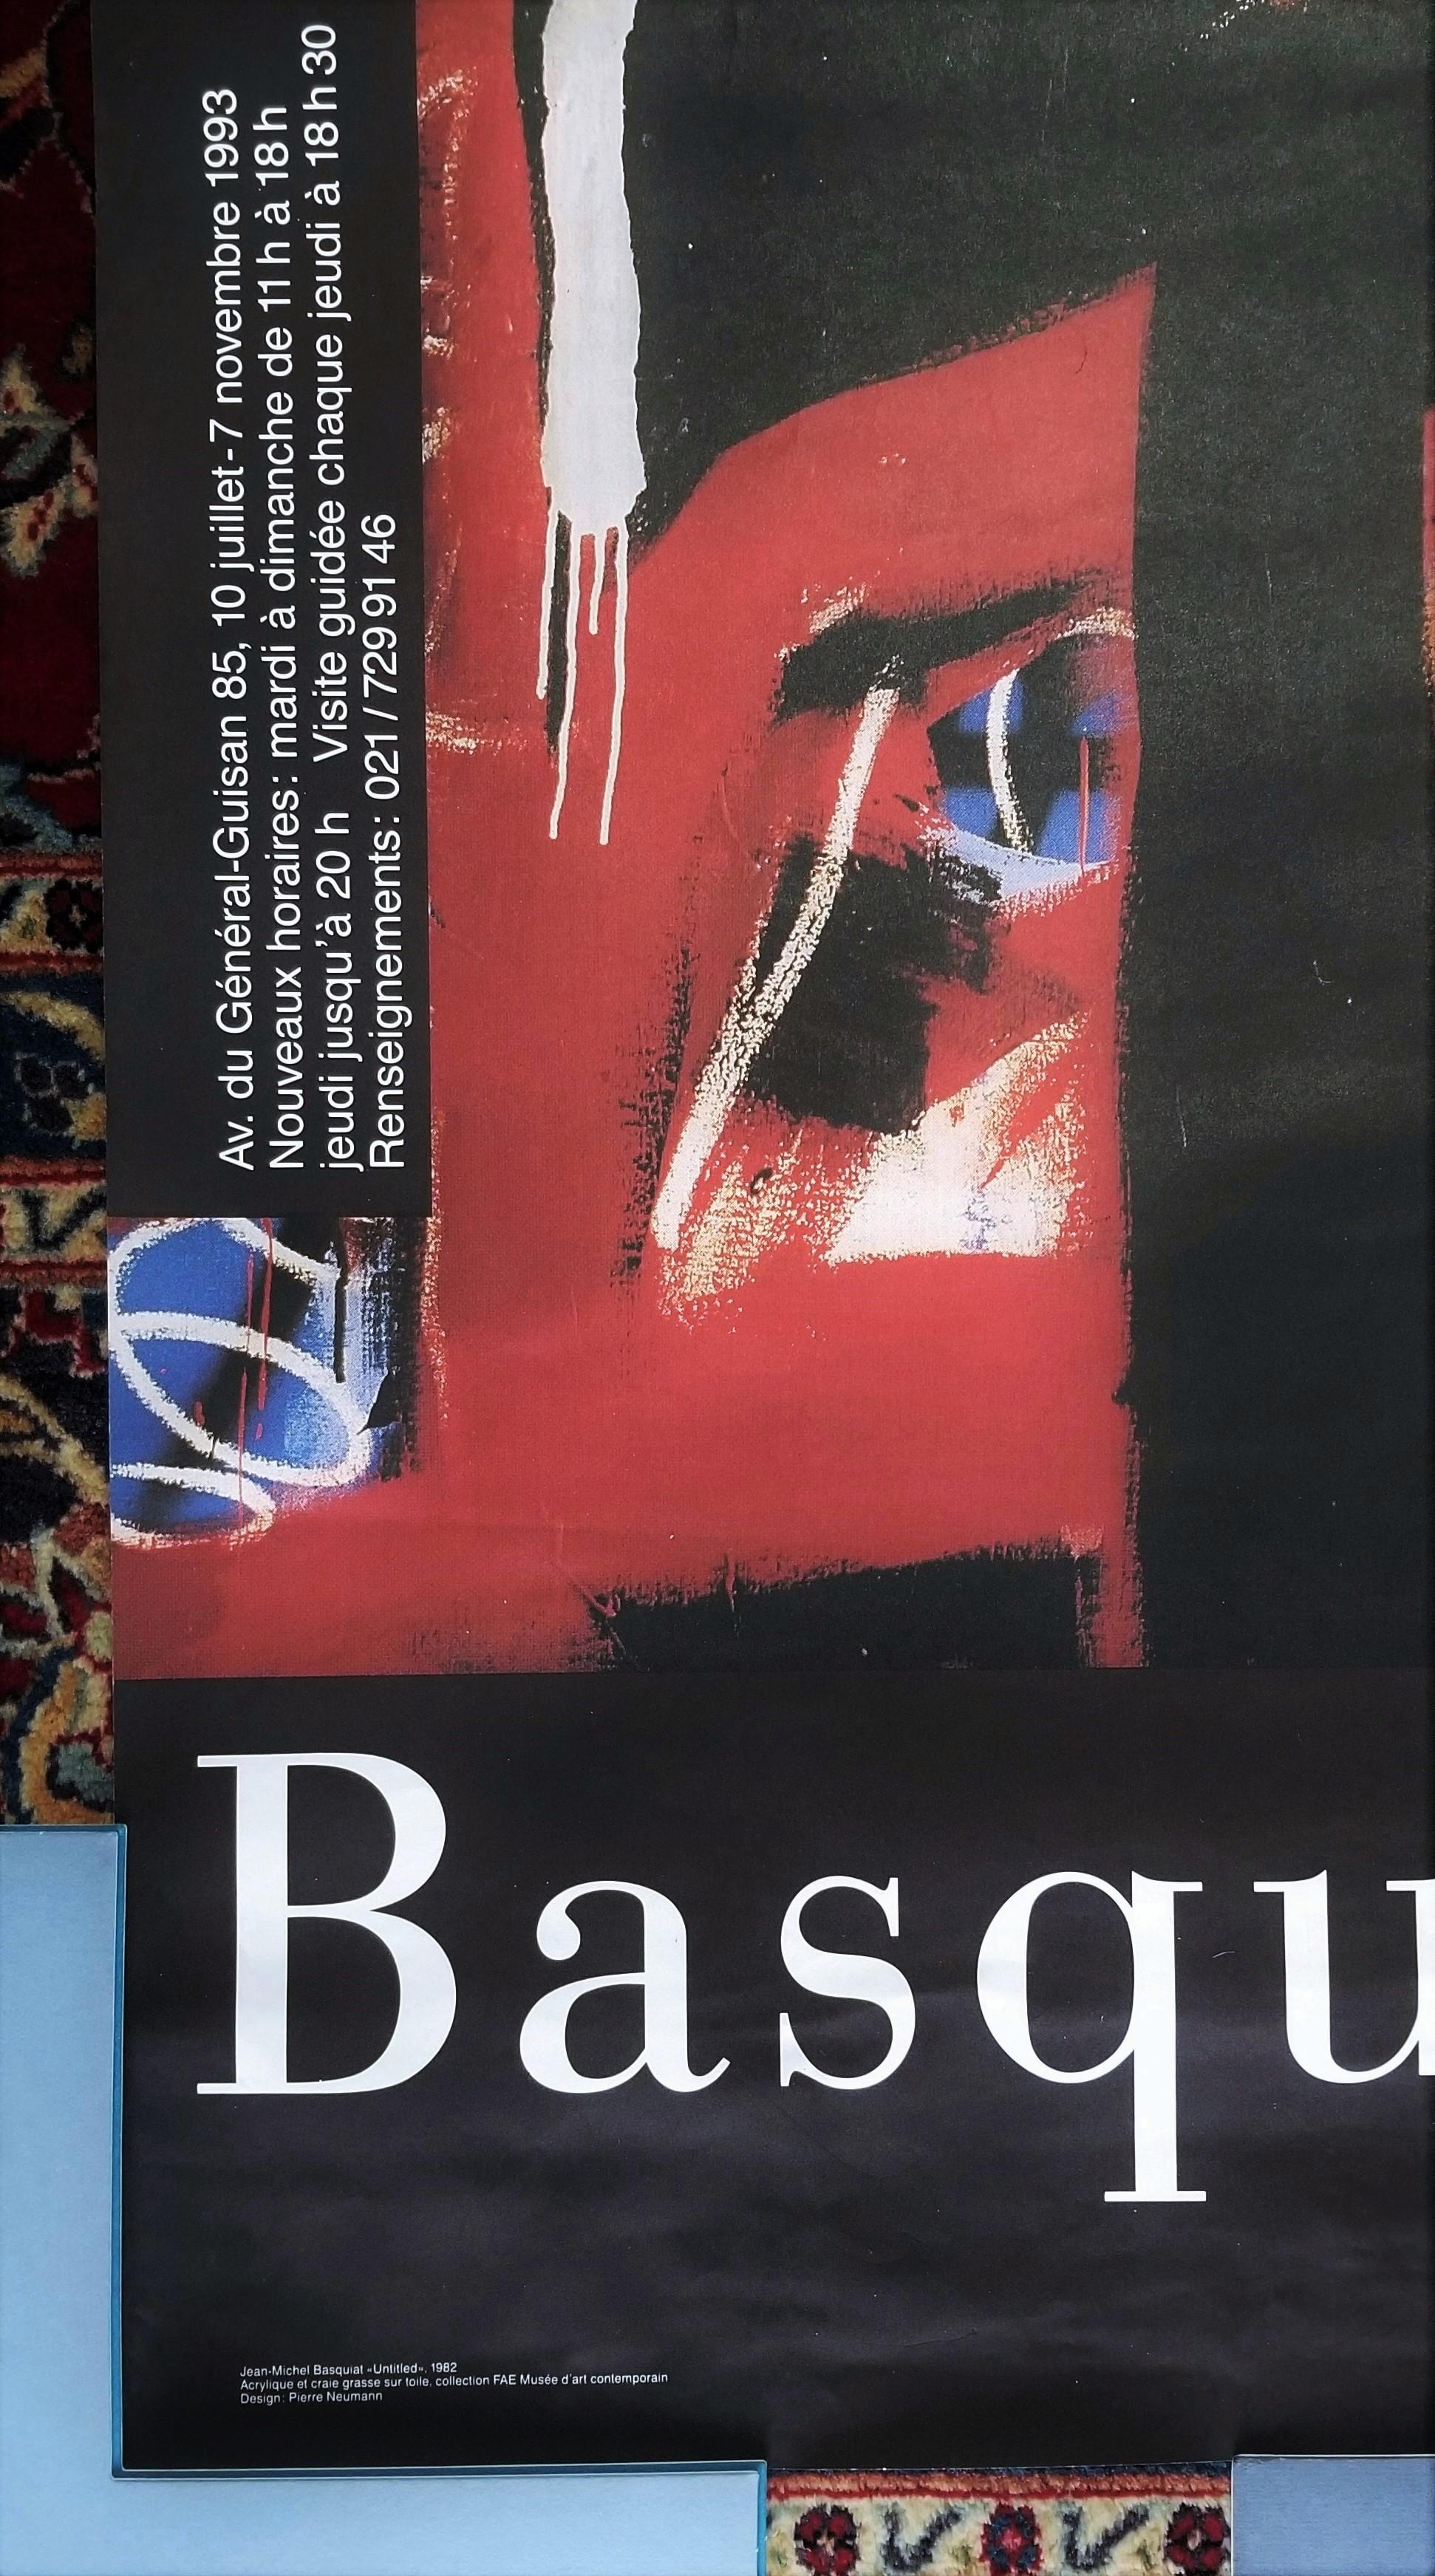 Artistics : (d'après) Jean-Michel Basquiat (américain, 1960-1988)
Titre : 